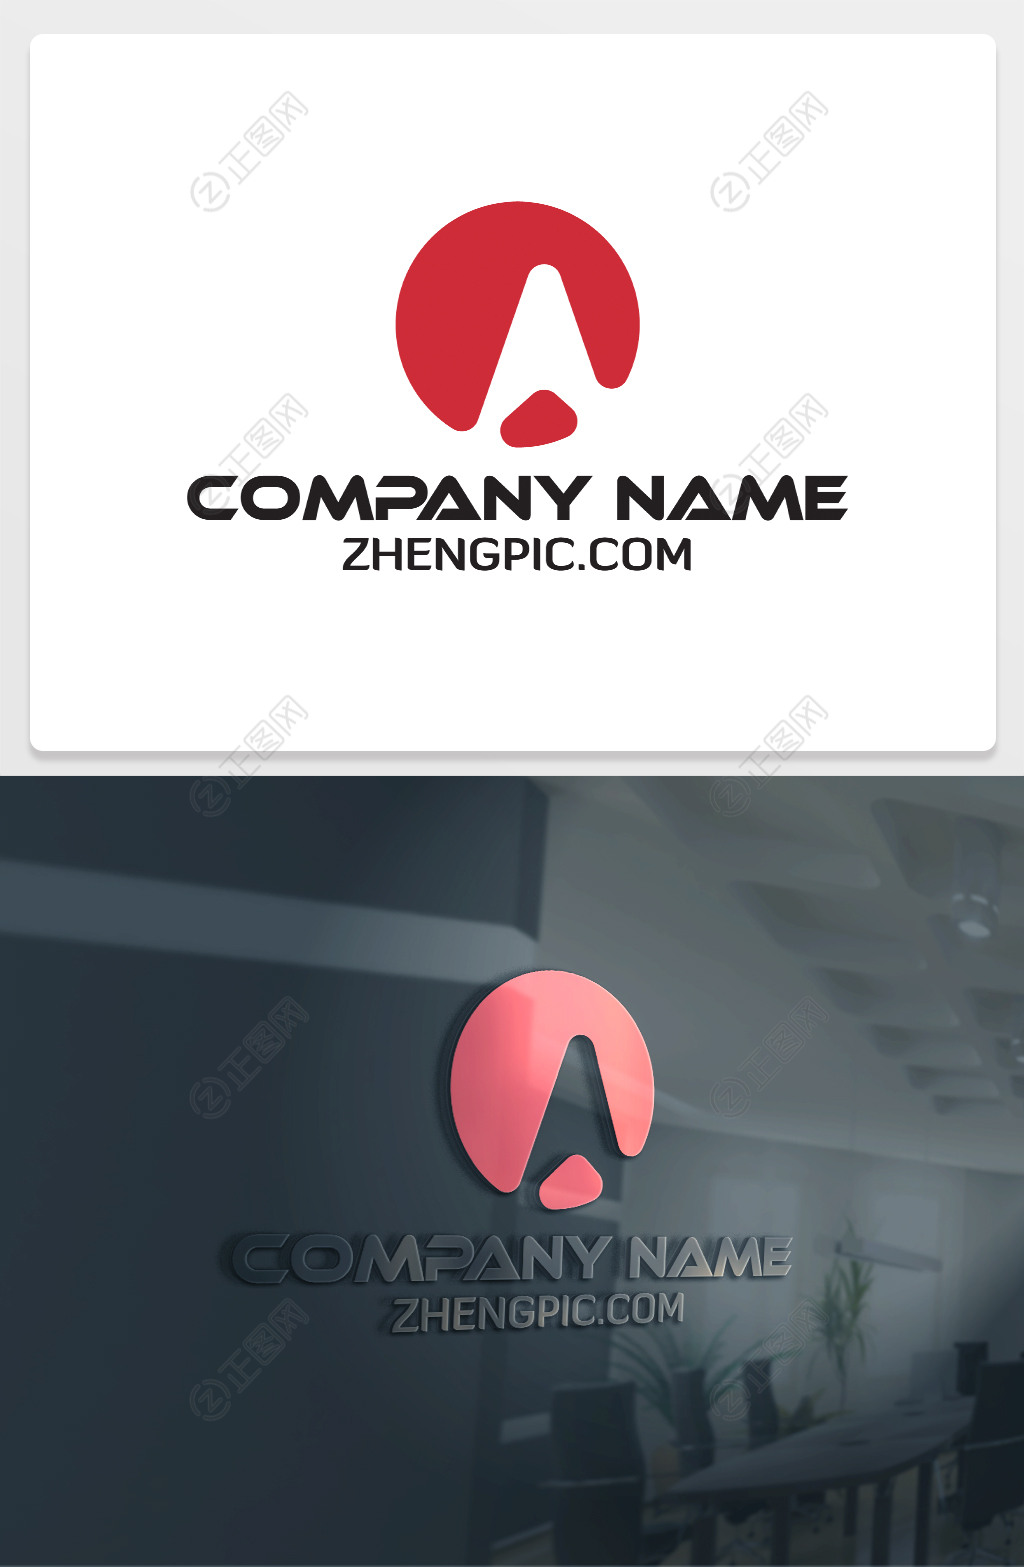 创意圆形A字母科技公司logo设计